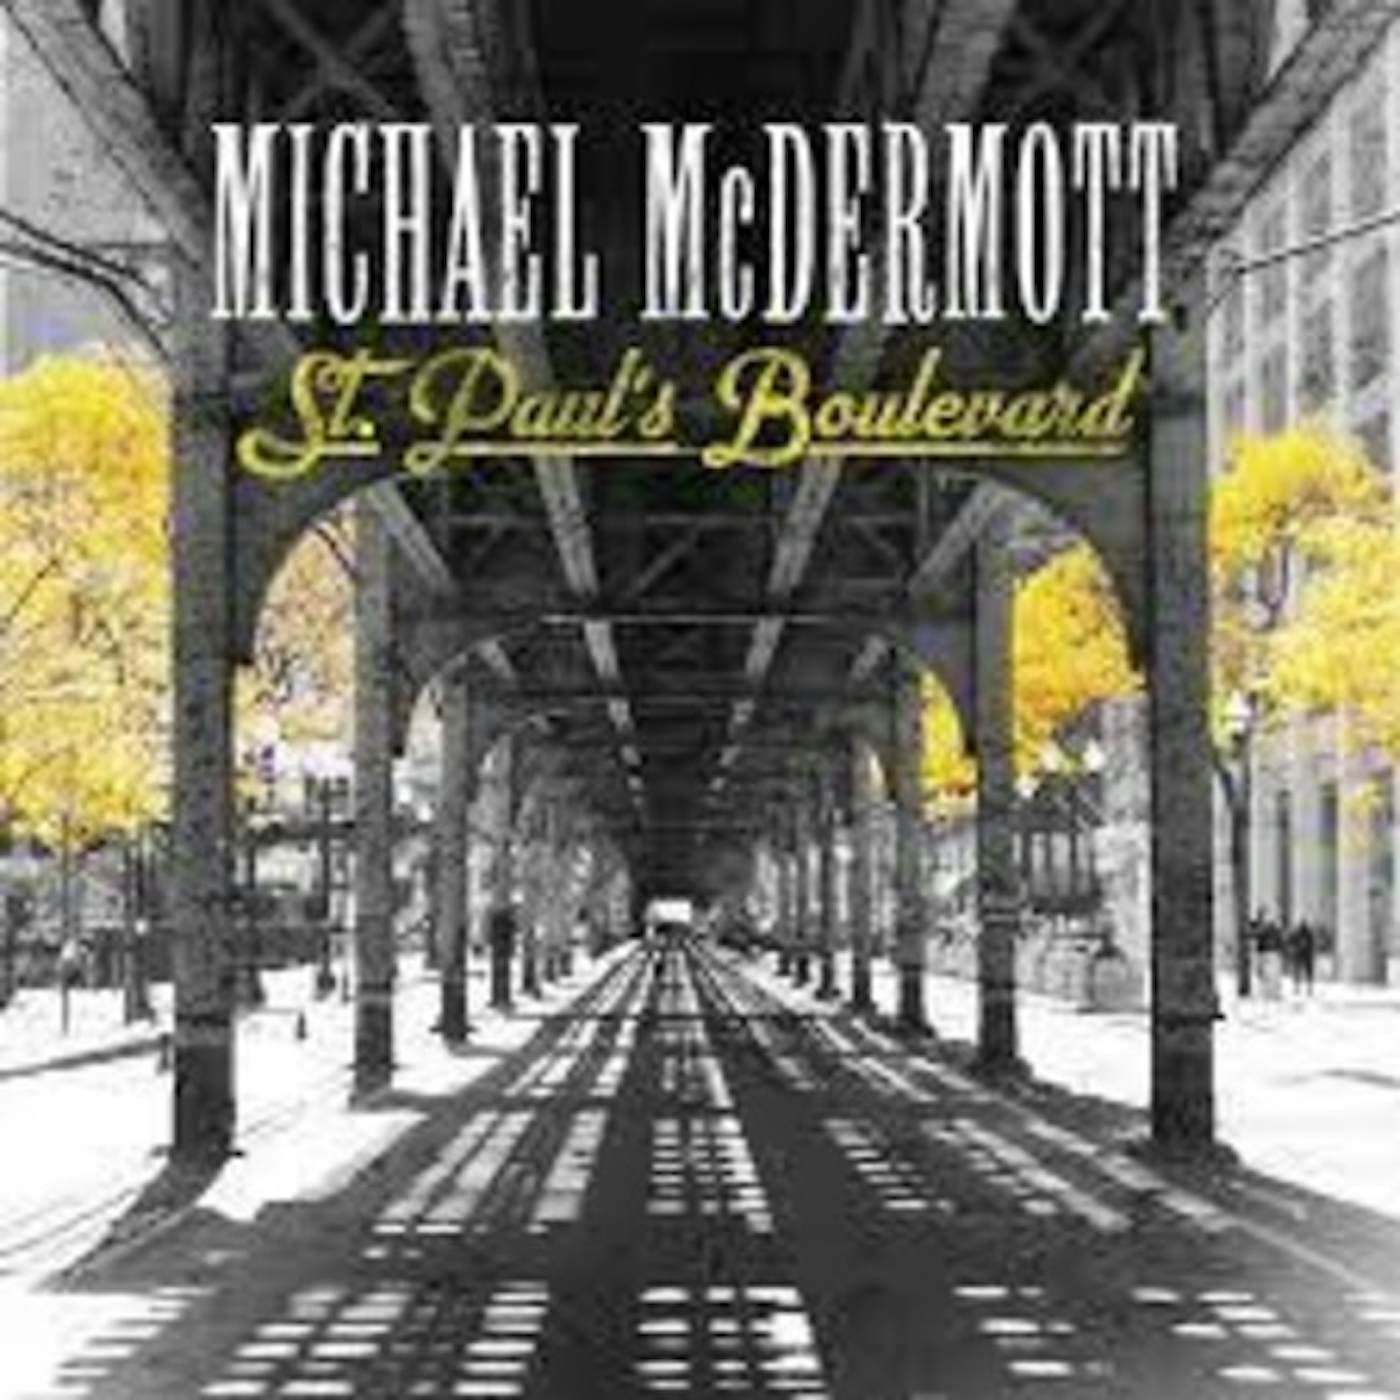 Michael McDermott ST PAUL'S BOULEVARD CD